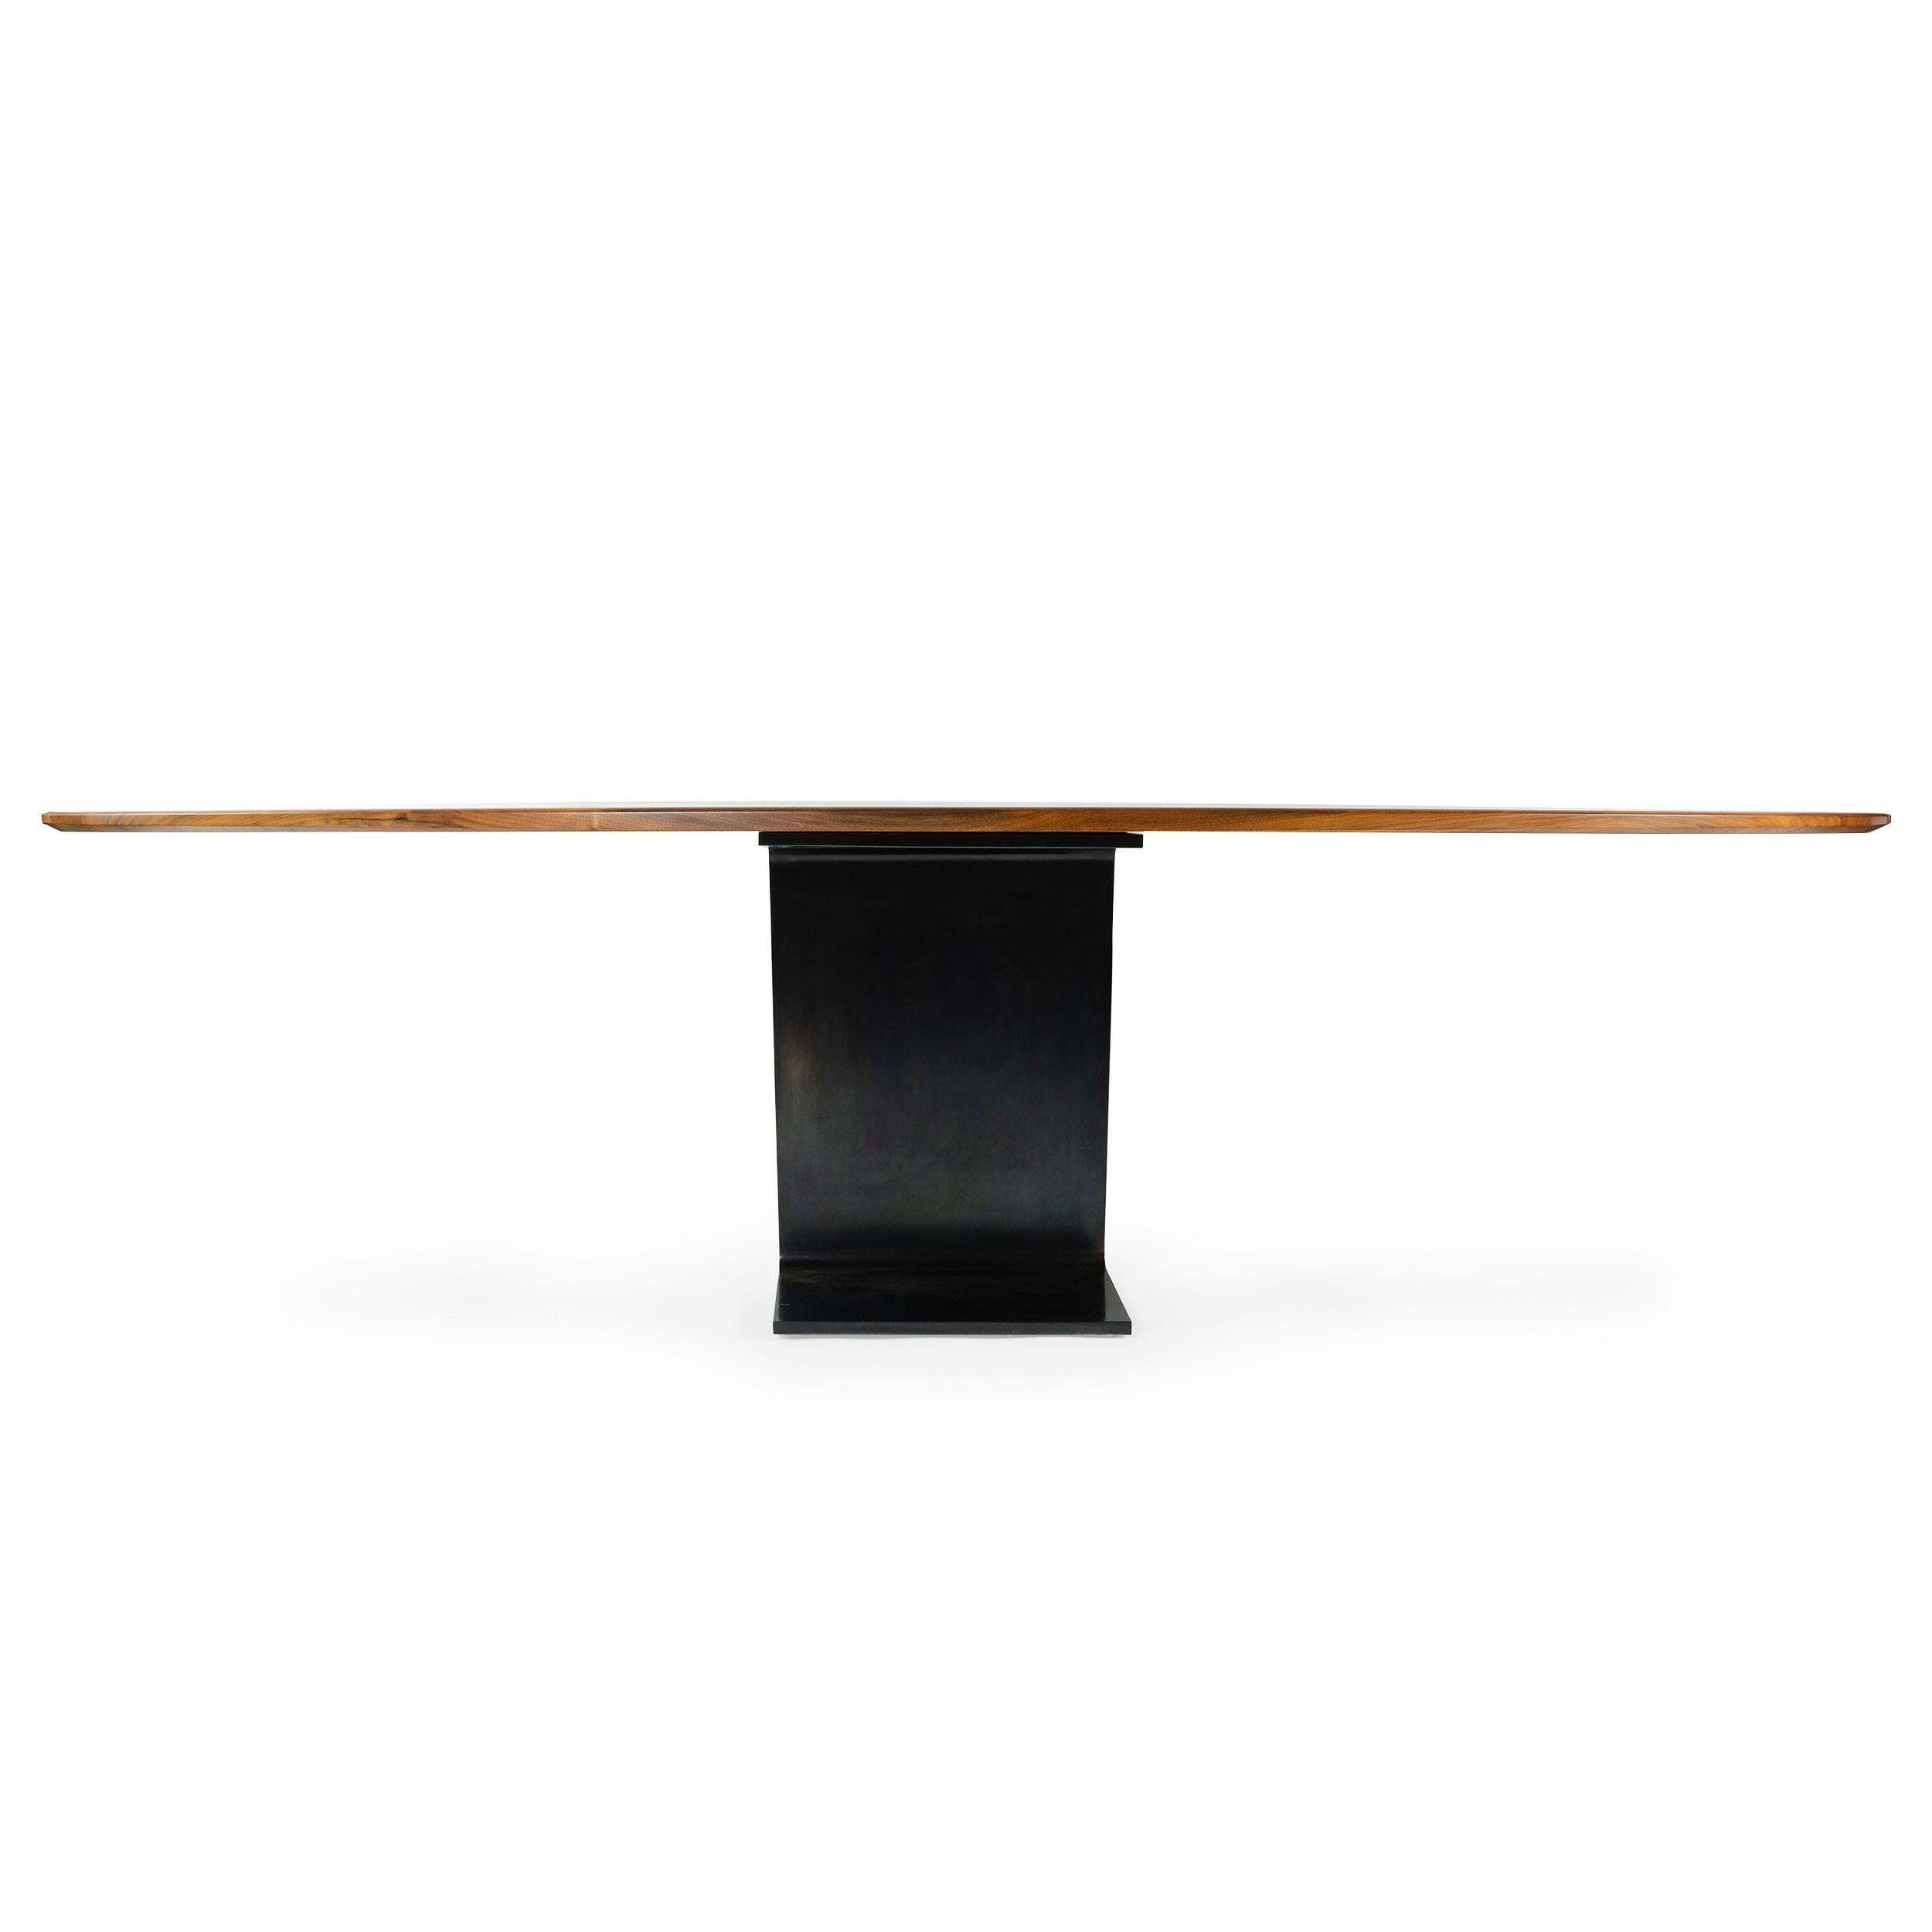 Une table ellipse sur mesure avec un plateau en bois de noyer massif et une base en acier patiné. Le plateau en bois mesure 53,75 x 108 pouces. Fabriqué à New York par le Wyeth Workshop. Disponible dans des tailles personnalisées.